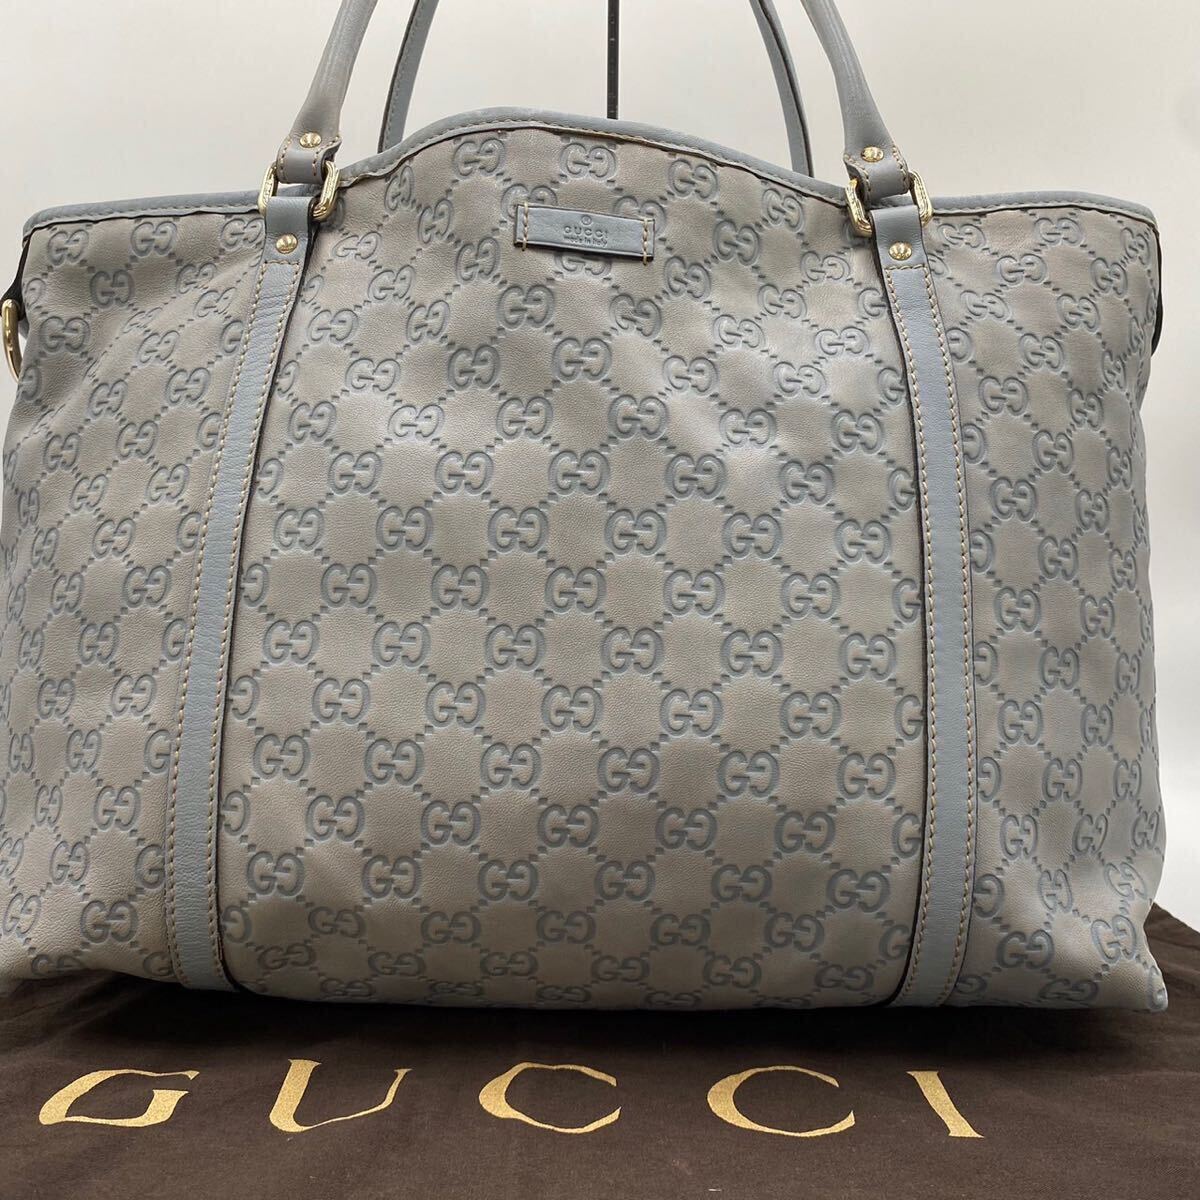 1 иен [ редкий цвет ]GUCCI Gucci большая сумка портфель натуральная кожа simaA4 возможно GG рисунок бизнес мужской плечо .. ходить на работу посещение школы документы оттенок голубого 